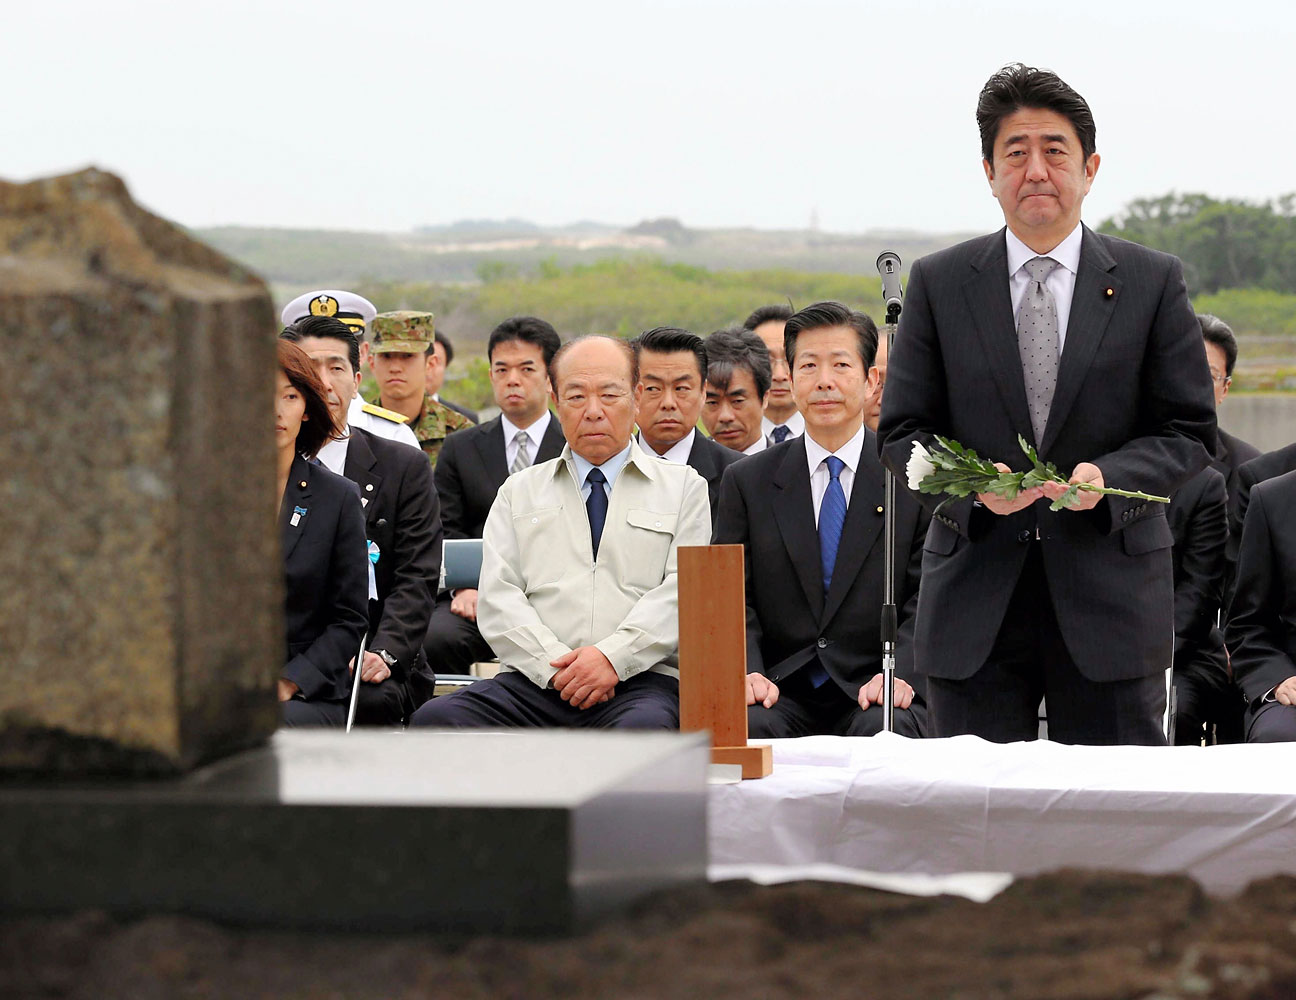 Prime Minister Abe Visit Ogasawara Islands